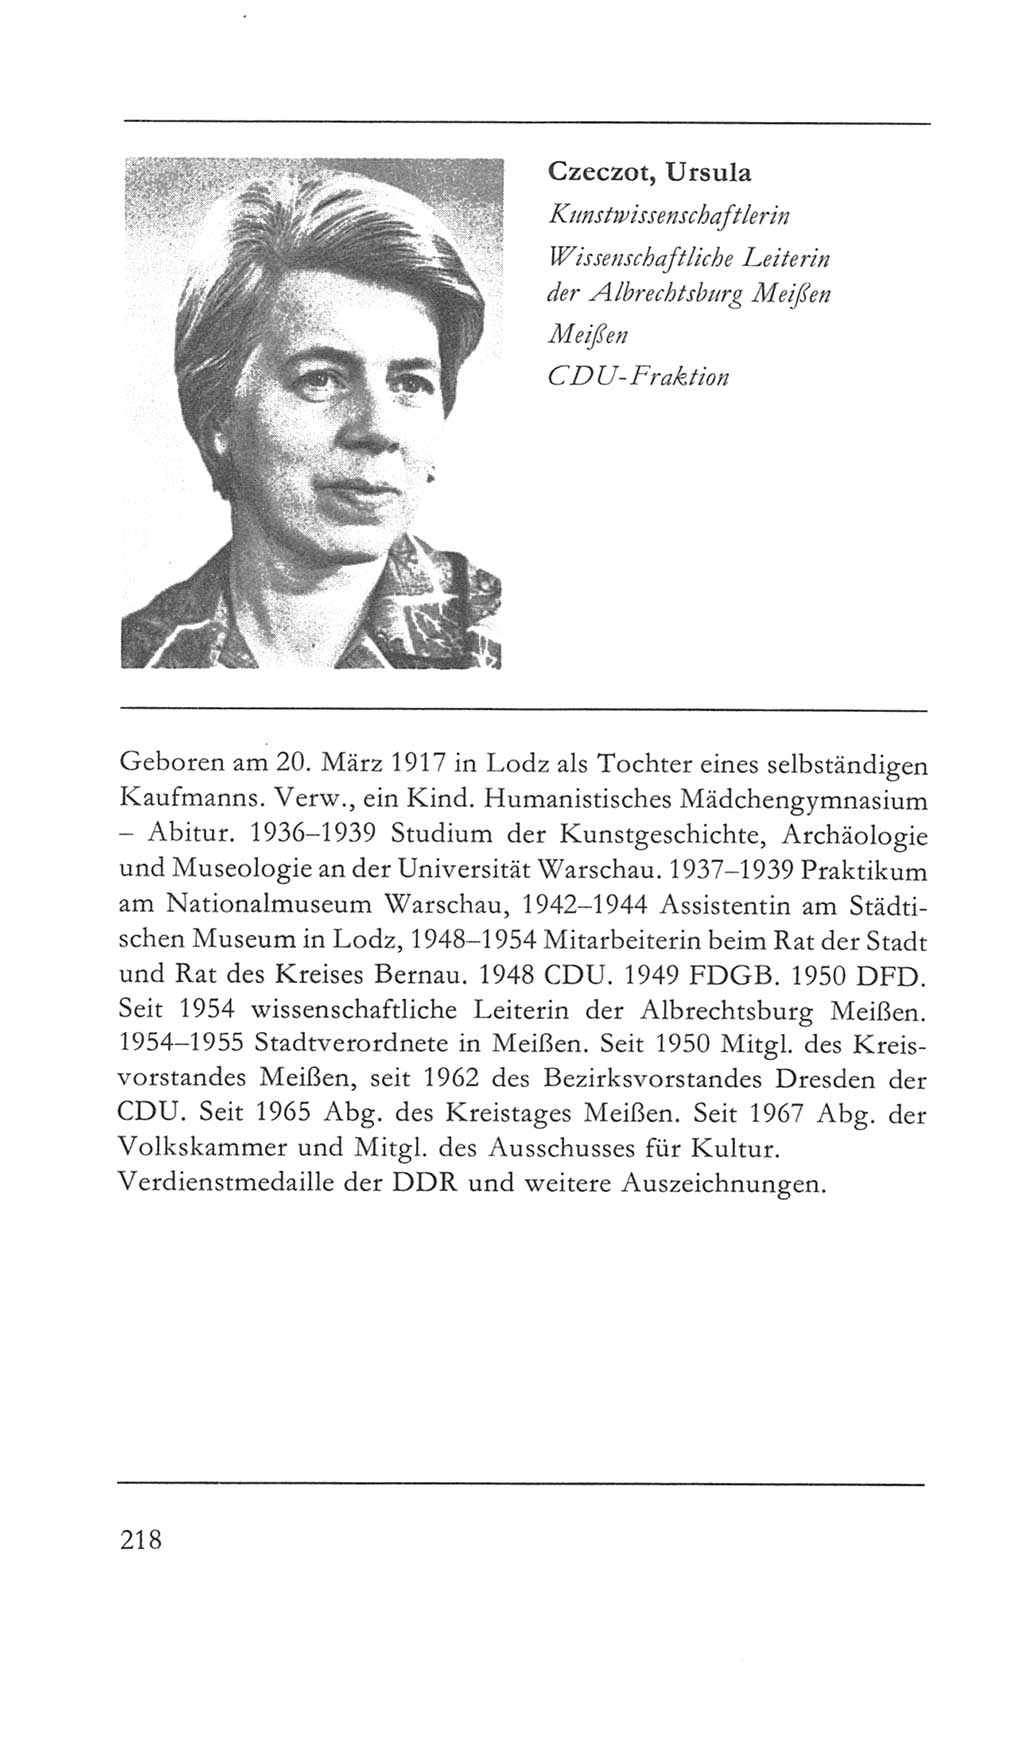 Volkskammer (VK) der Deutschen Demokratischen Republik (DDR) 5. Wahlperiode 1967-1971, Seite 218 (VK. DDR 5. WP. 1967-1971, S. 218)